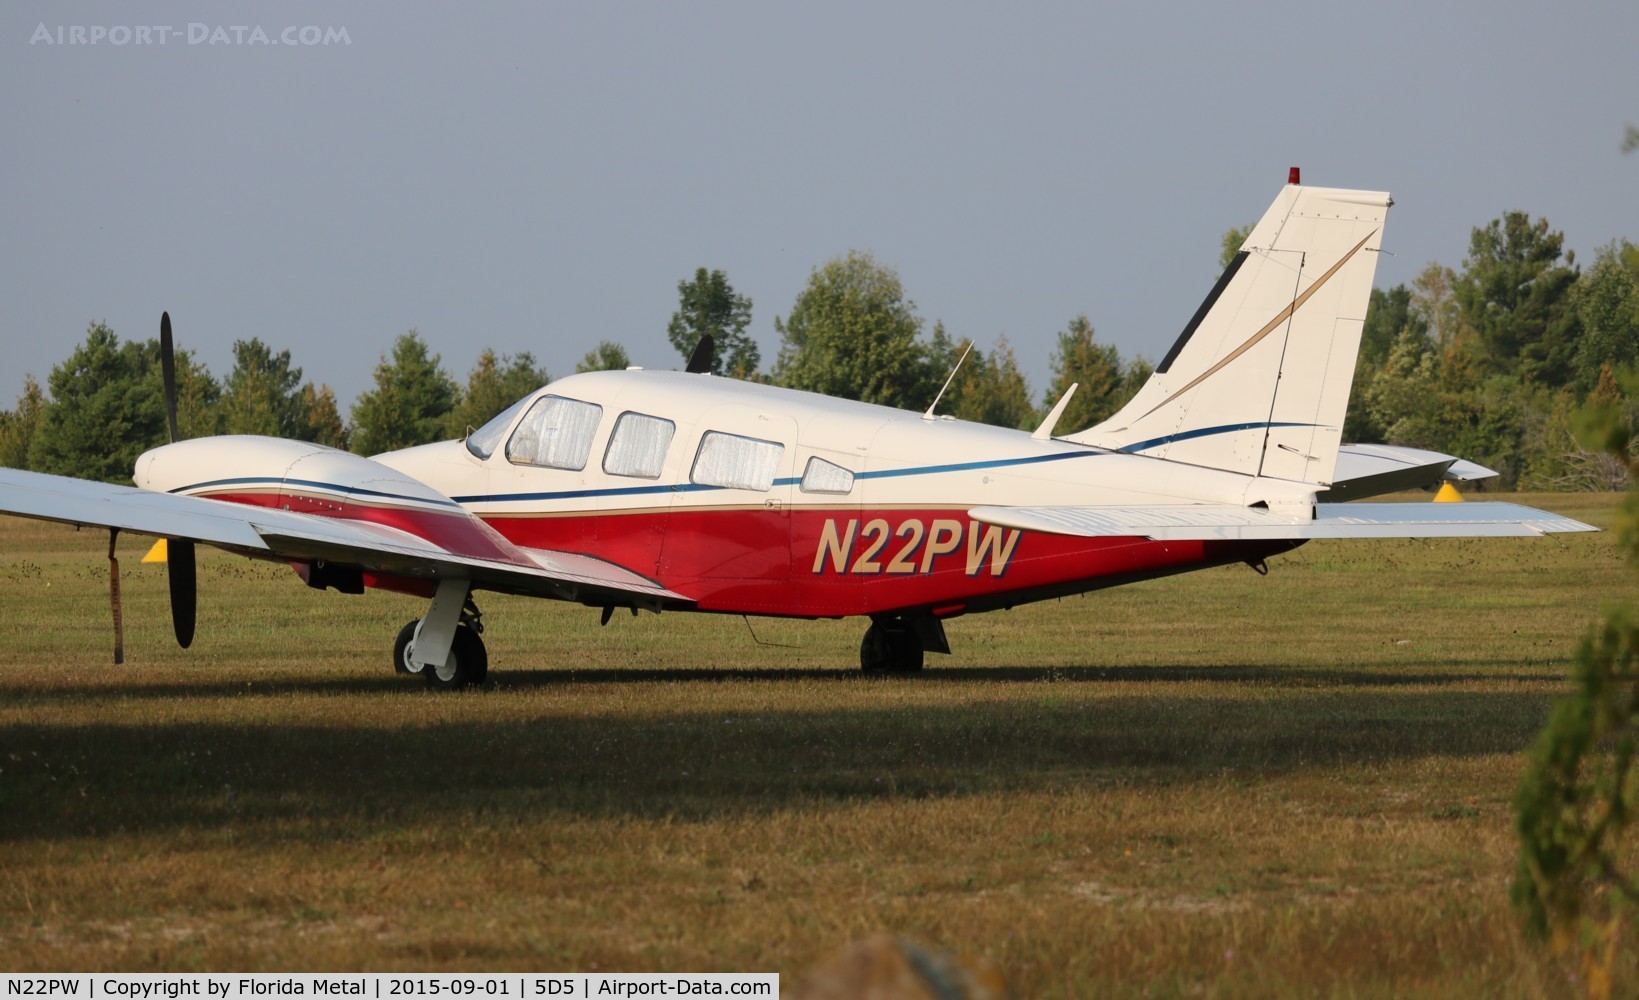 N22PW, 1975 Piper PA-34-200T Seneca II C/N 34-7570144, PA-34-200T